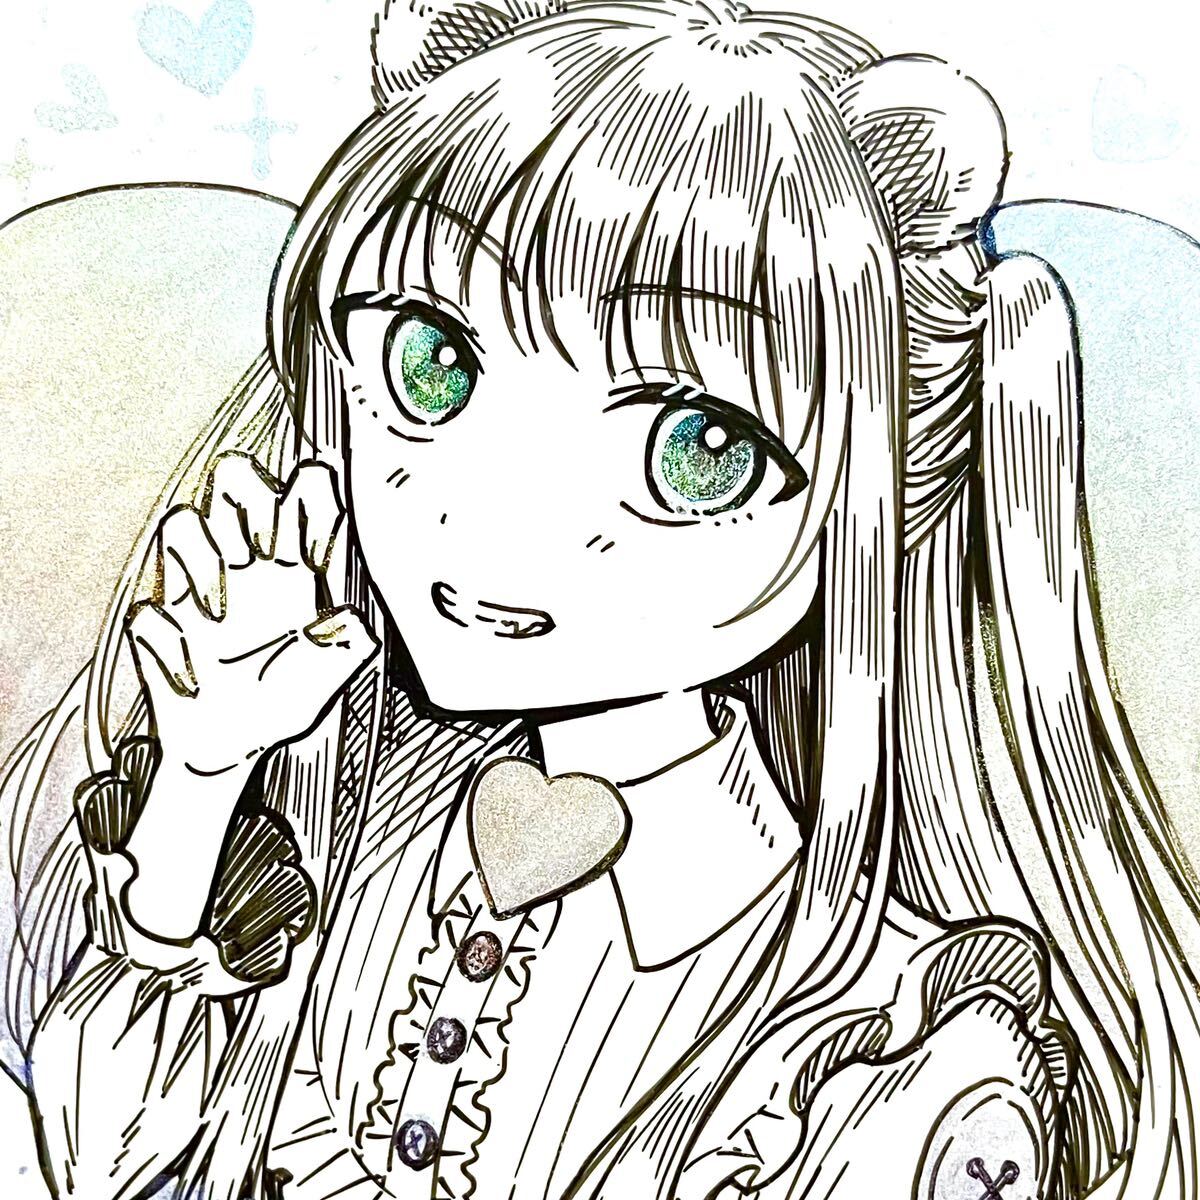 손으로 그린 일러스트 원화 원화 펜화 소녀 케모미미, 만화, 애니메이션 상품, 손으로 그린 그림